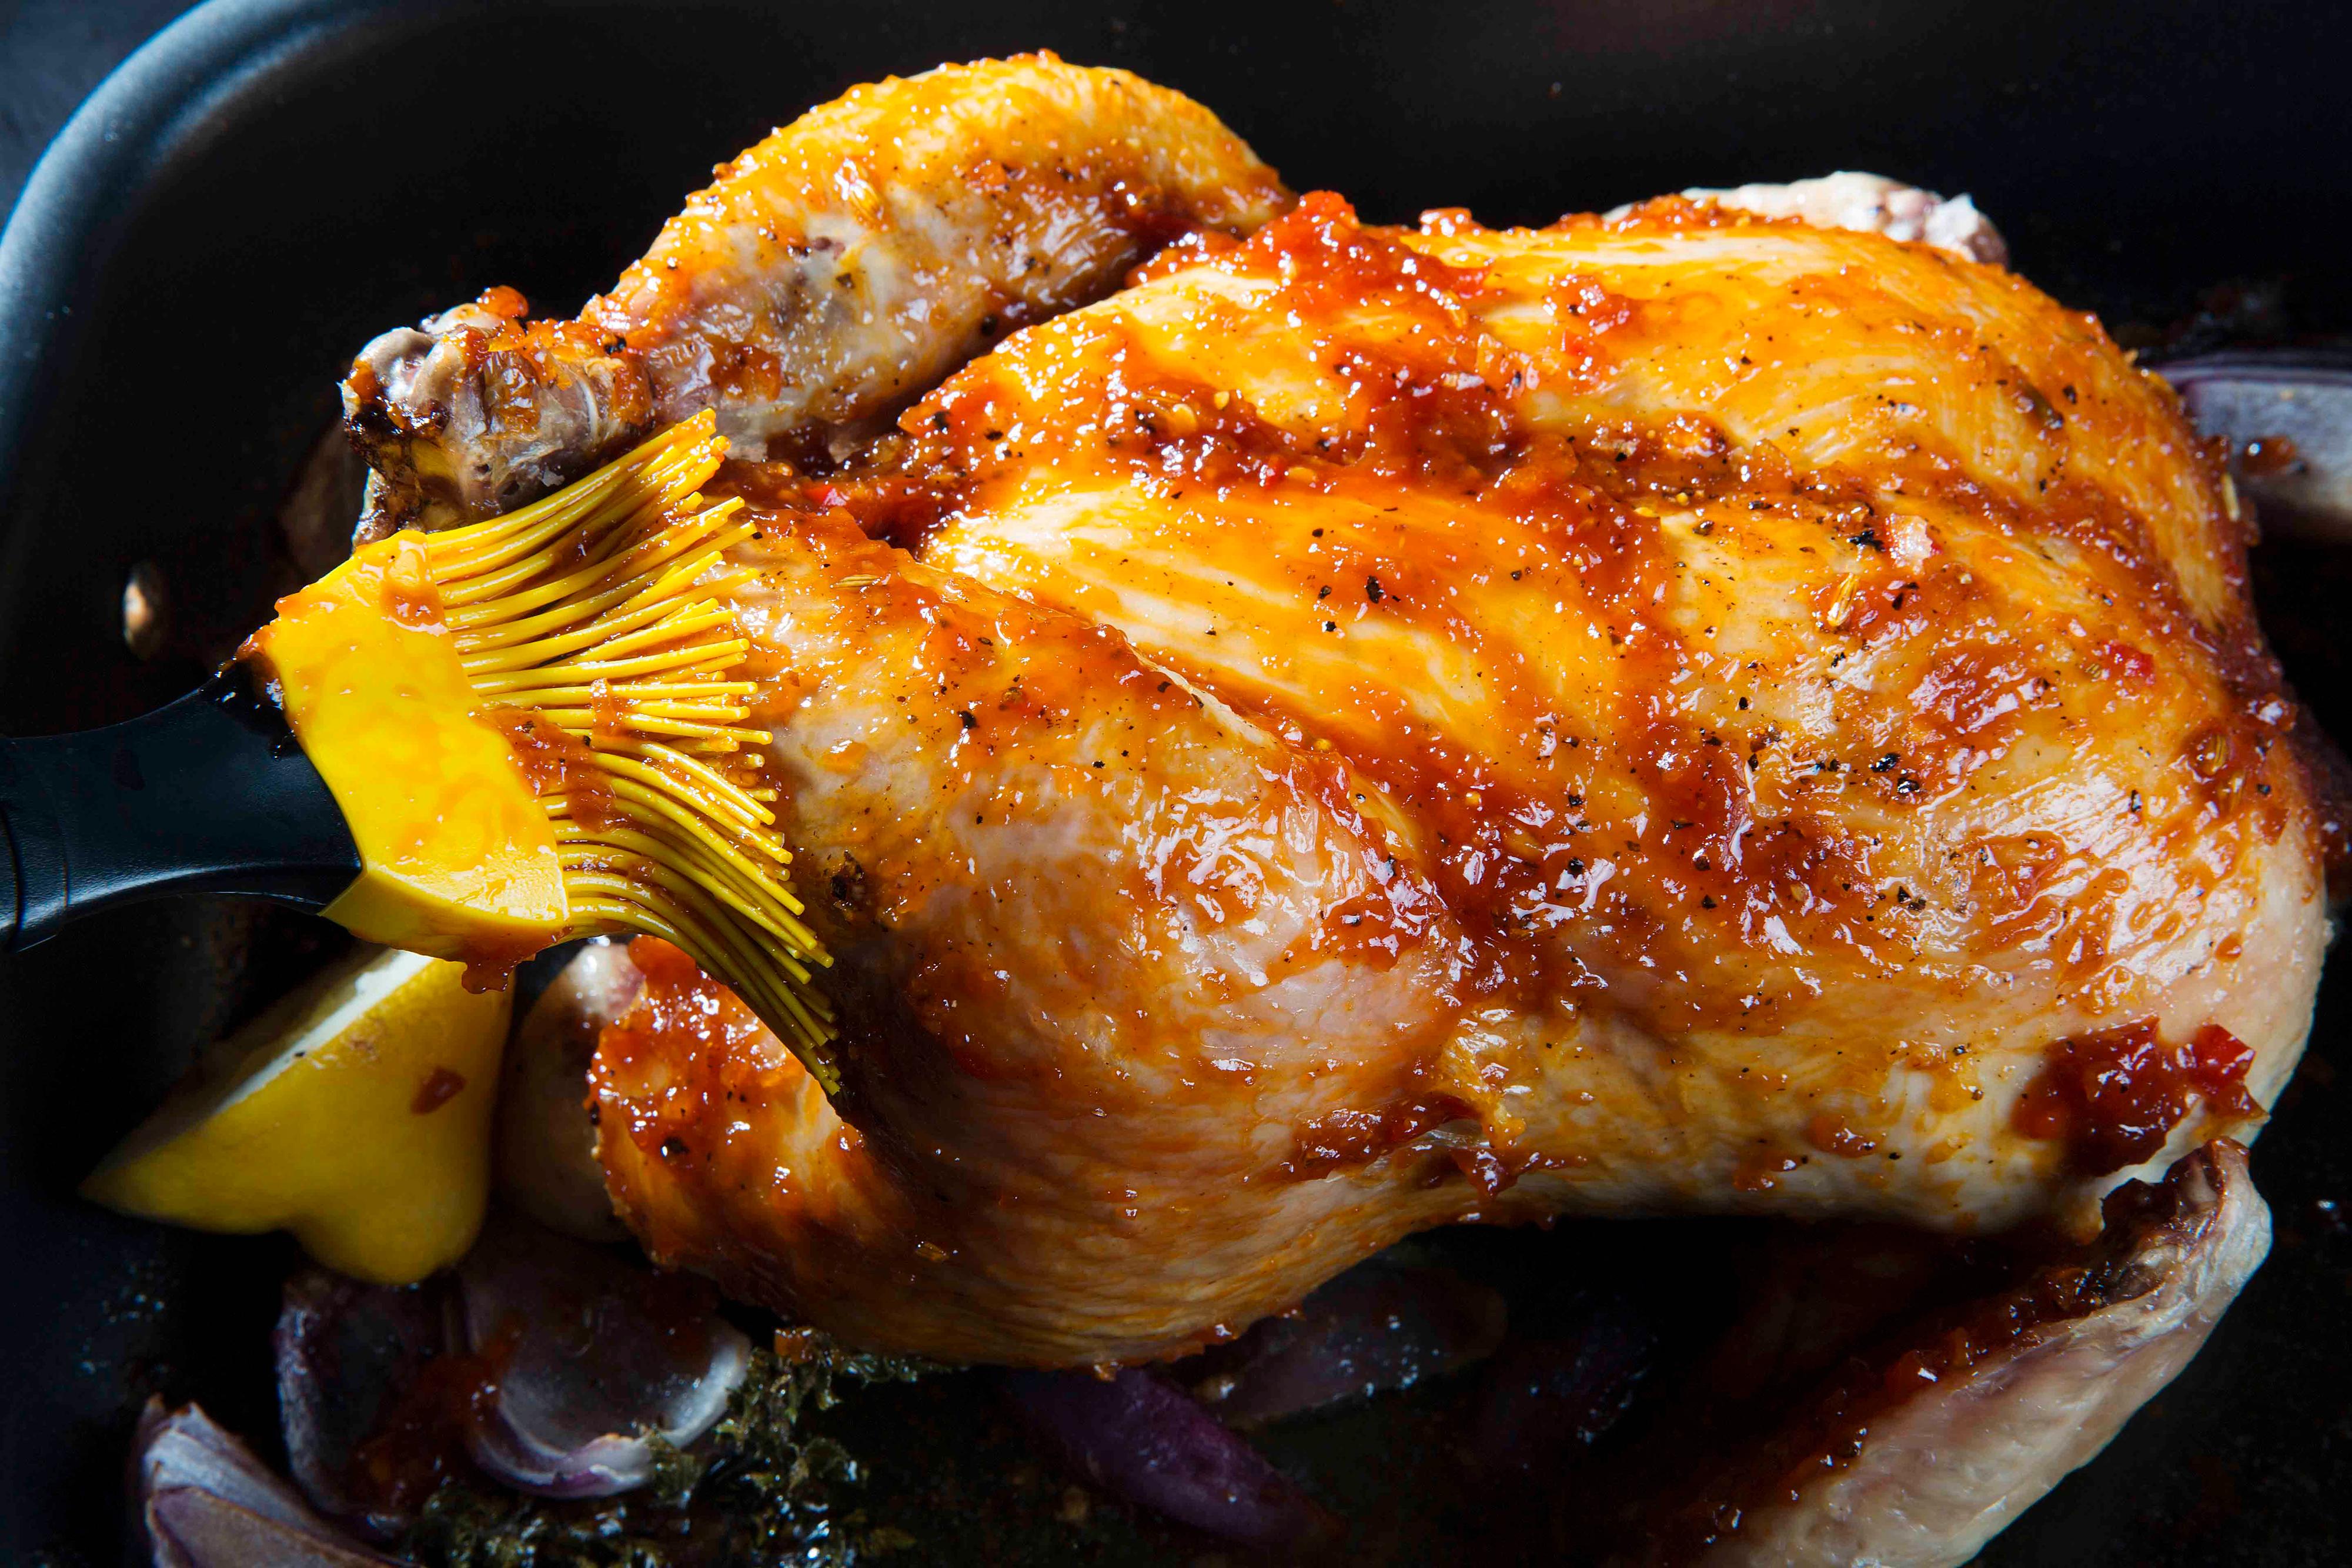 Ta den ut av ovnen og pensle med grillsausen. Stek videre i 45 minutter eller til temperaturen er 68 ved låret. Ta ut kyllingen, gjenta penslingen og la den hvile i minst 15 minutter før den deles opp.